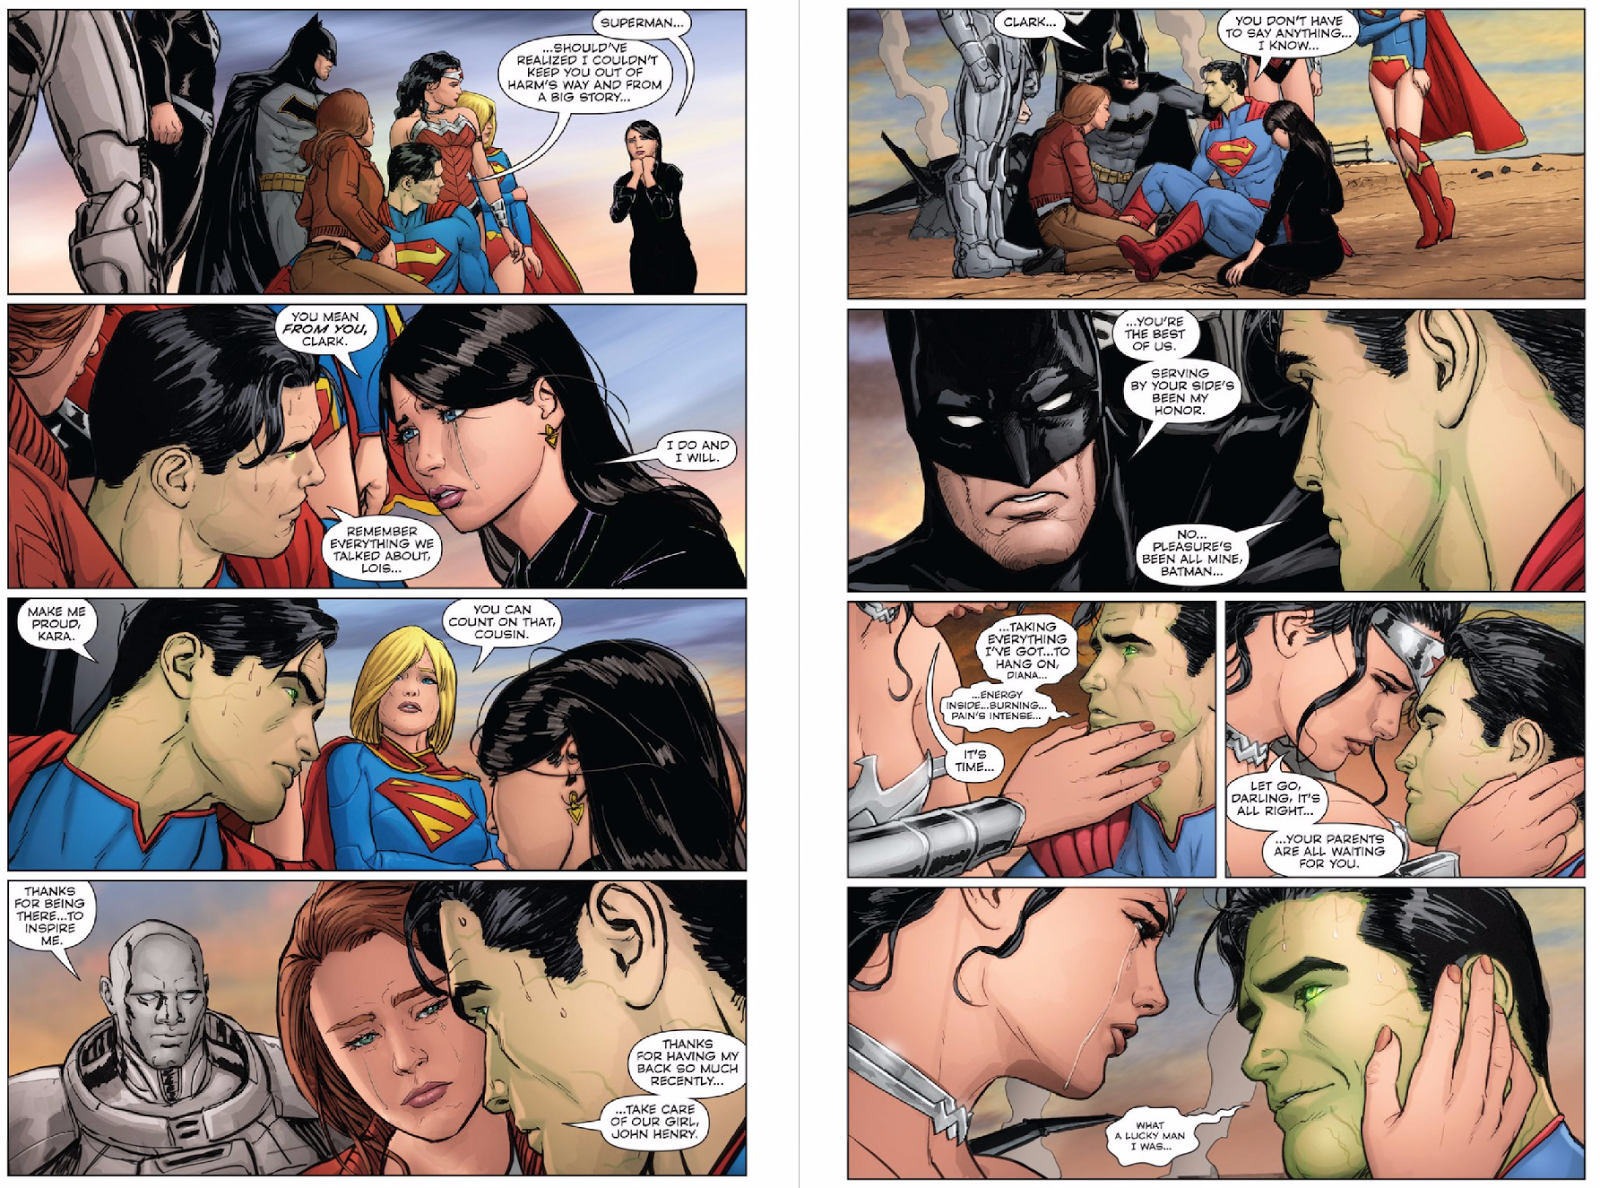 43 - [DC Comics] Superman: Discusión General - Página 10 Mtmc7v8ujjeuu7woe7ue